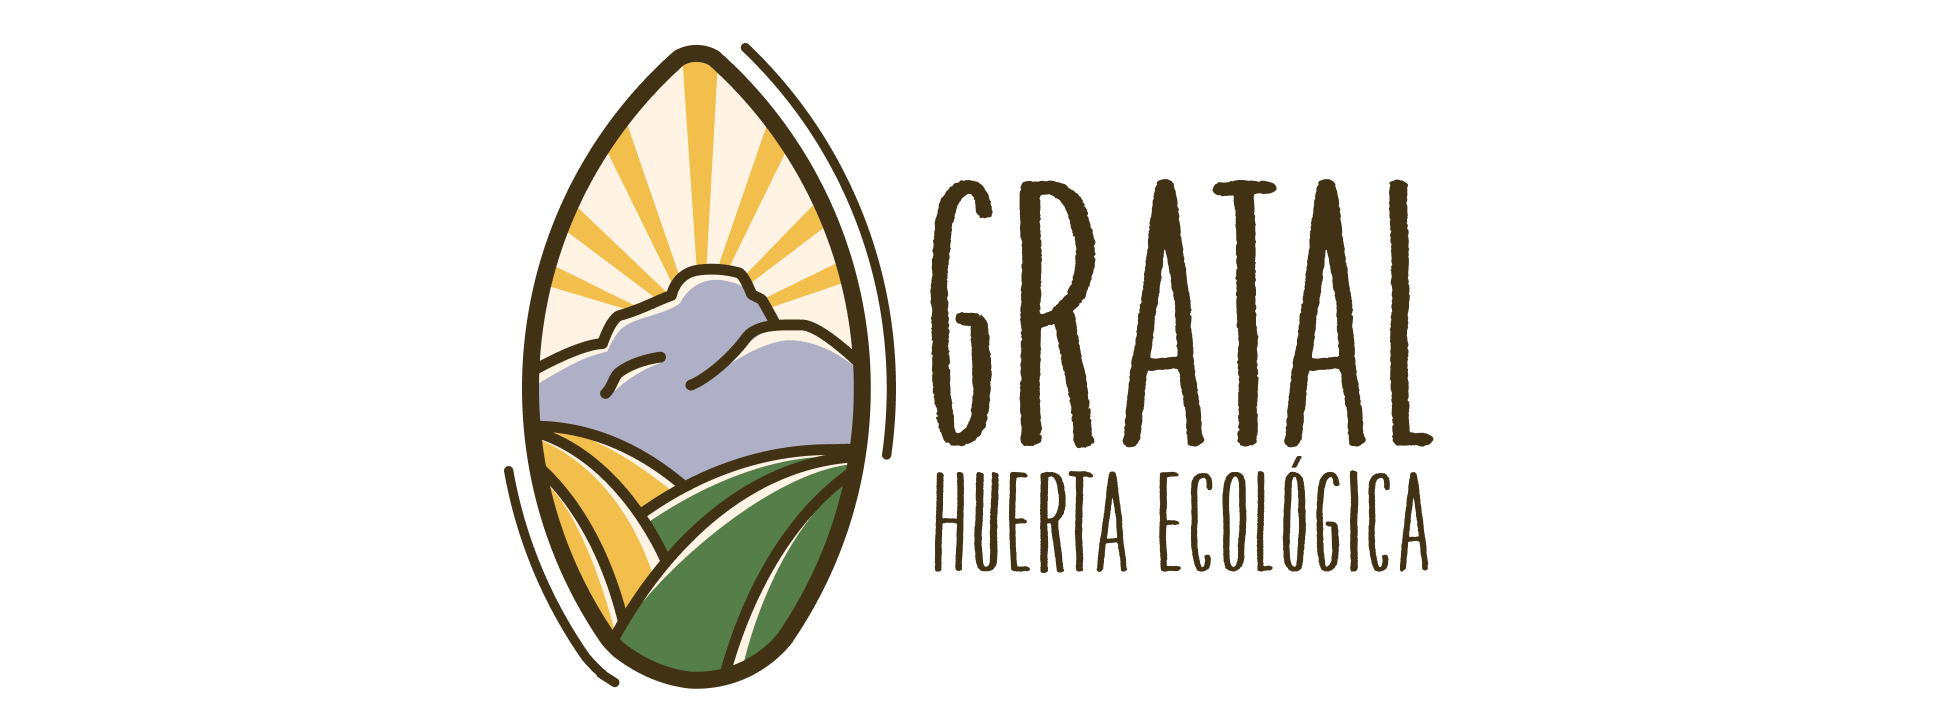 Huerta Gratal